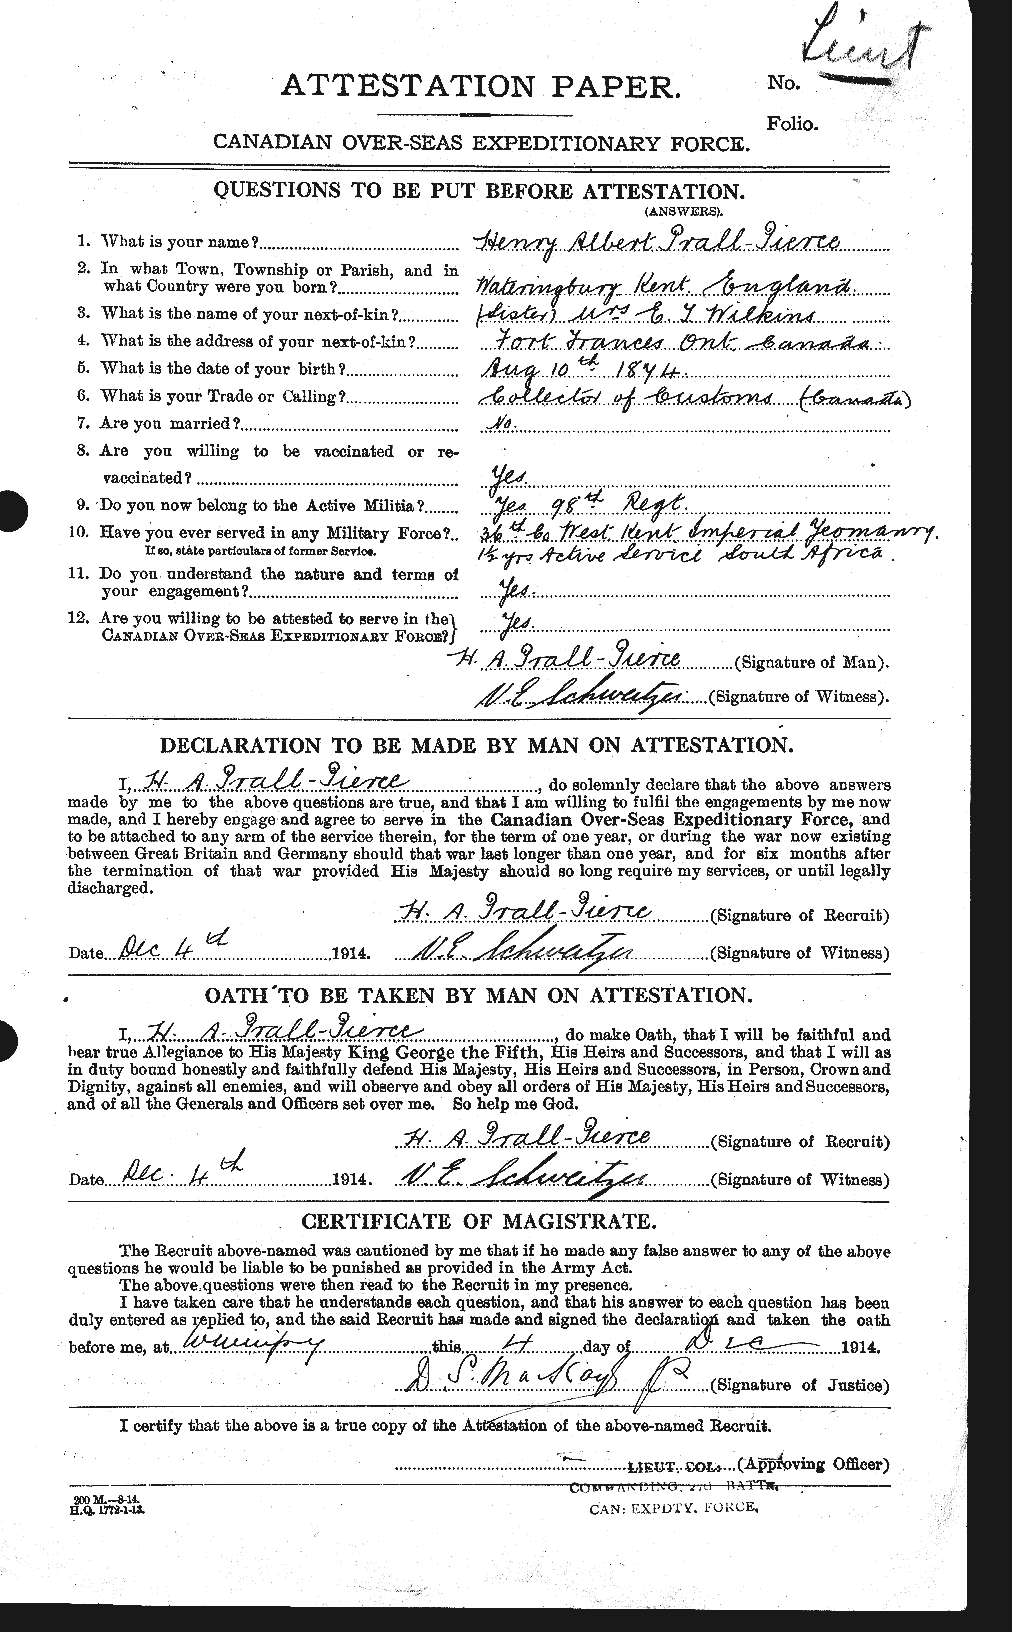 Dossiers du Personnel de la Première Guerre mondiale - CEC 586569a